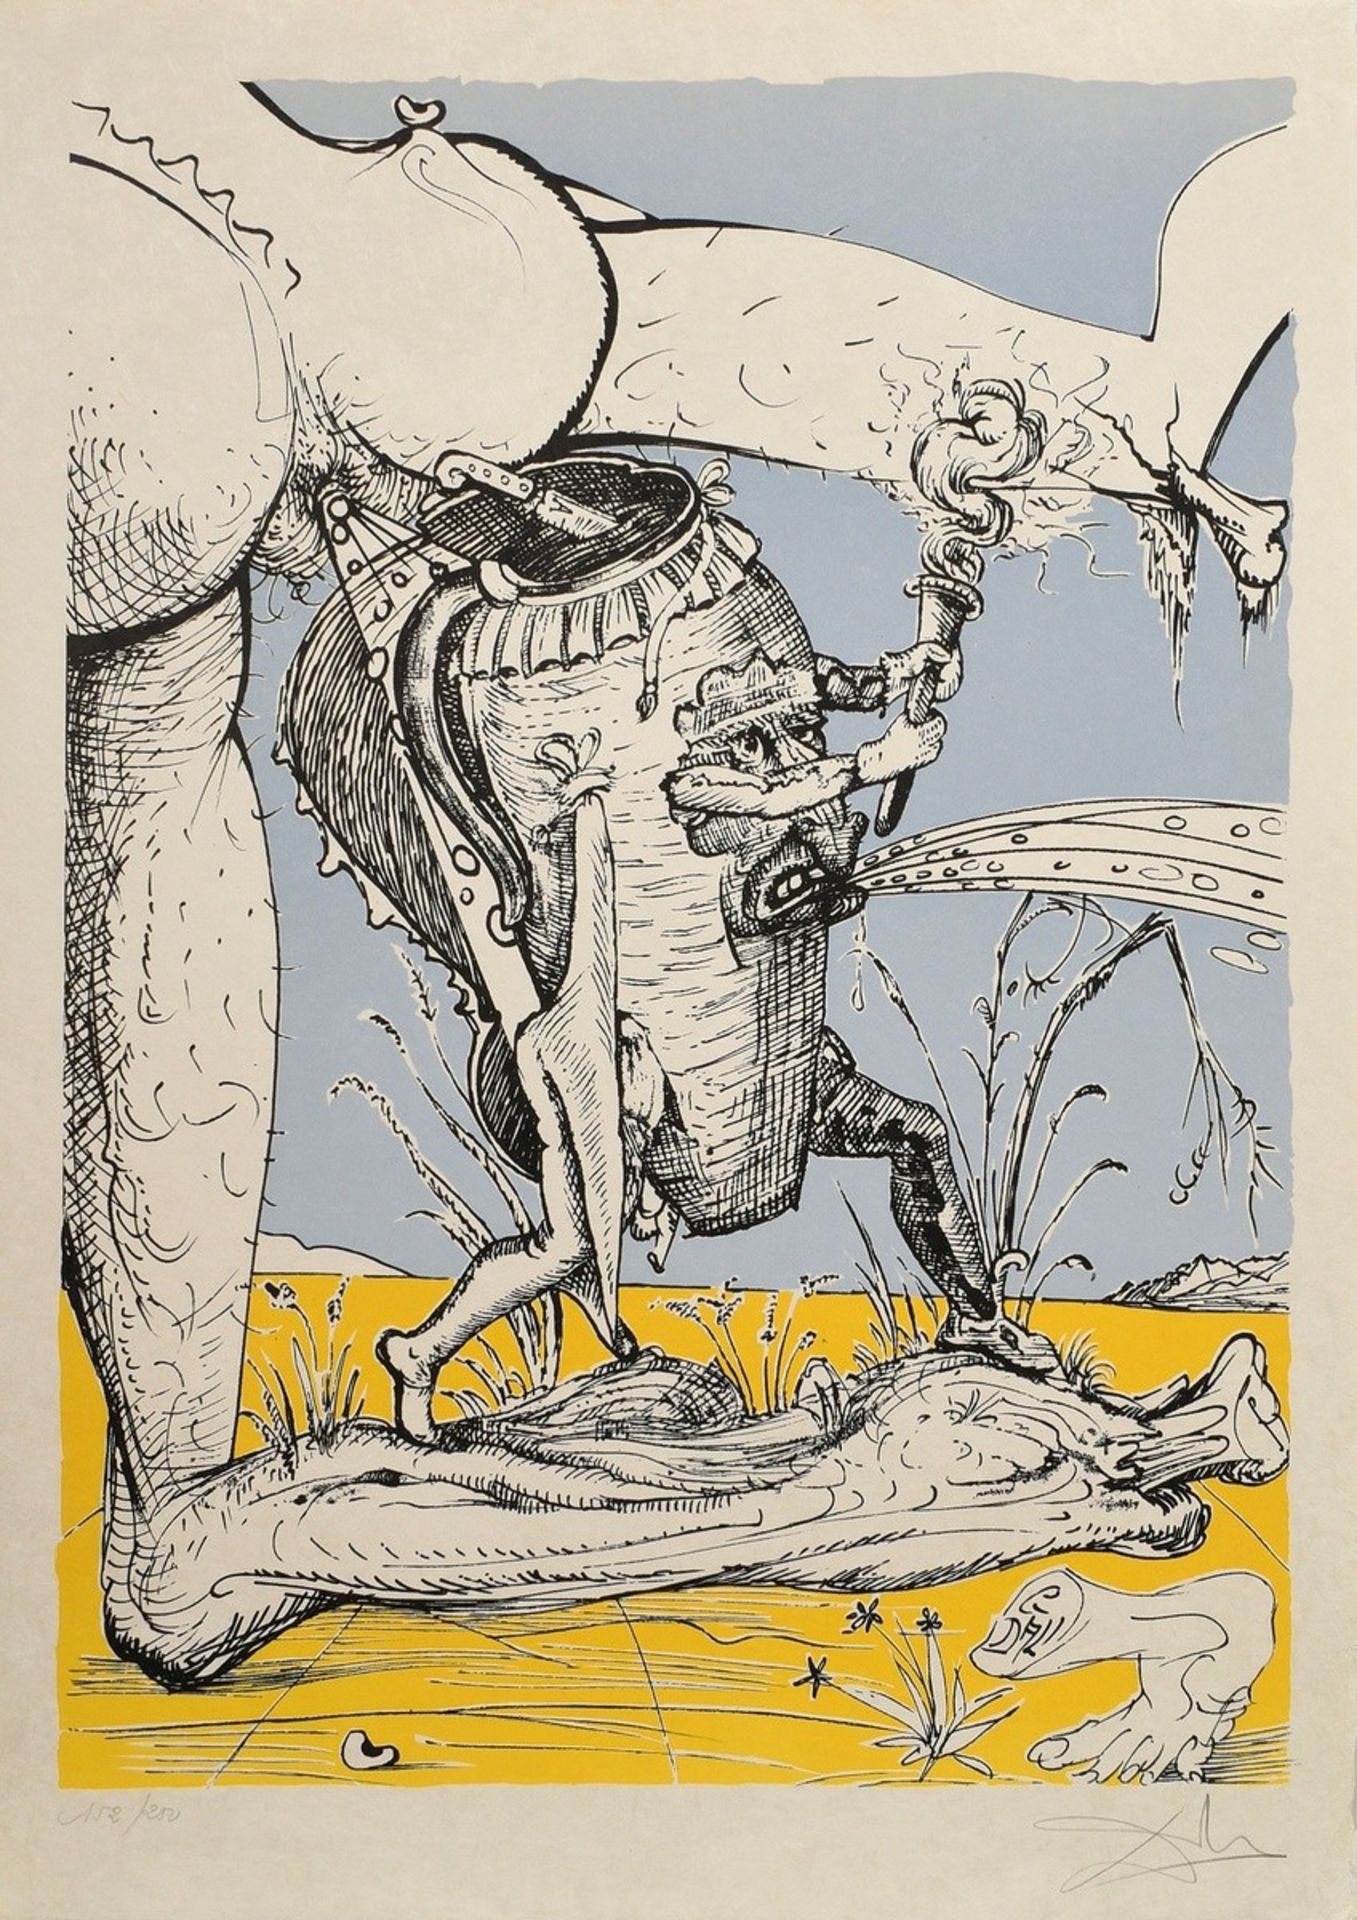 Dalí, Salvador (1904-1989) "Les songes drolatiques de Pantagruel”, 152/250, 25 (Farb-)Lithographien - Bild 4 aus 27